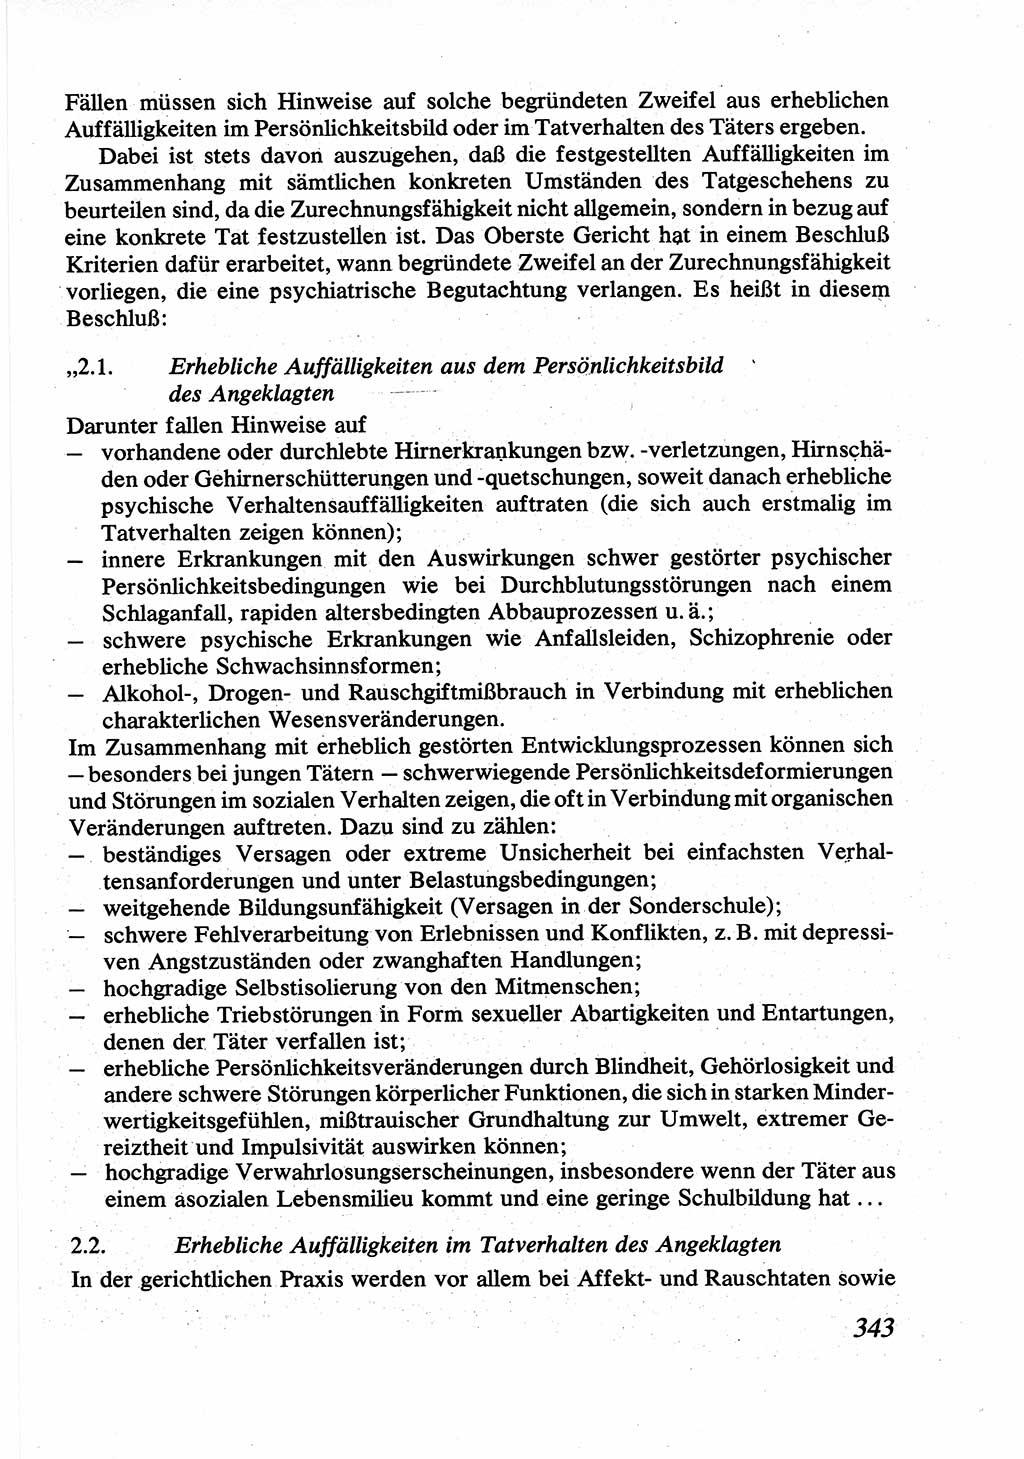 Strafrecht [Deutsche Demokratische Republik (DDR)], Allgemeiner Teil, Lehrbuch 1976, Seite 343 (Strafr. DDR AT Lb. 1976, S. 343)